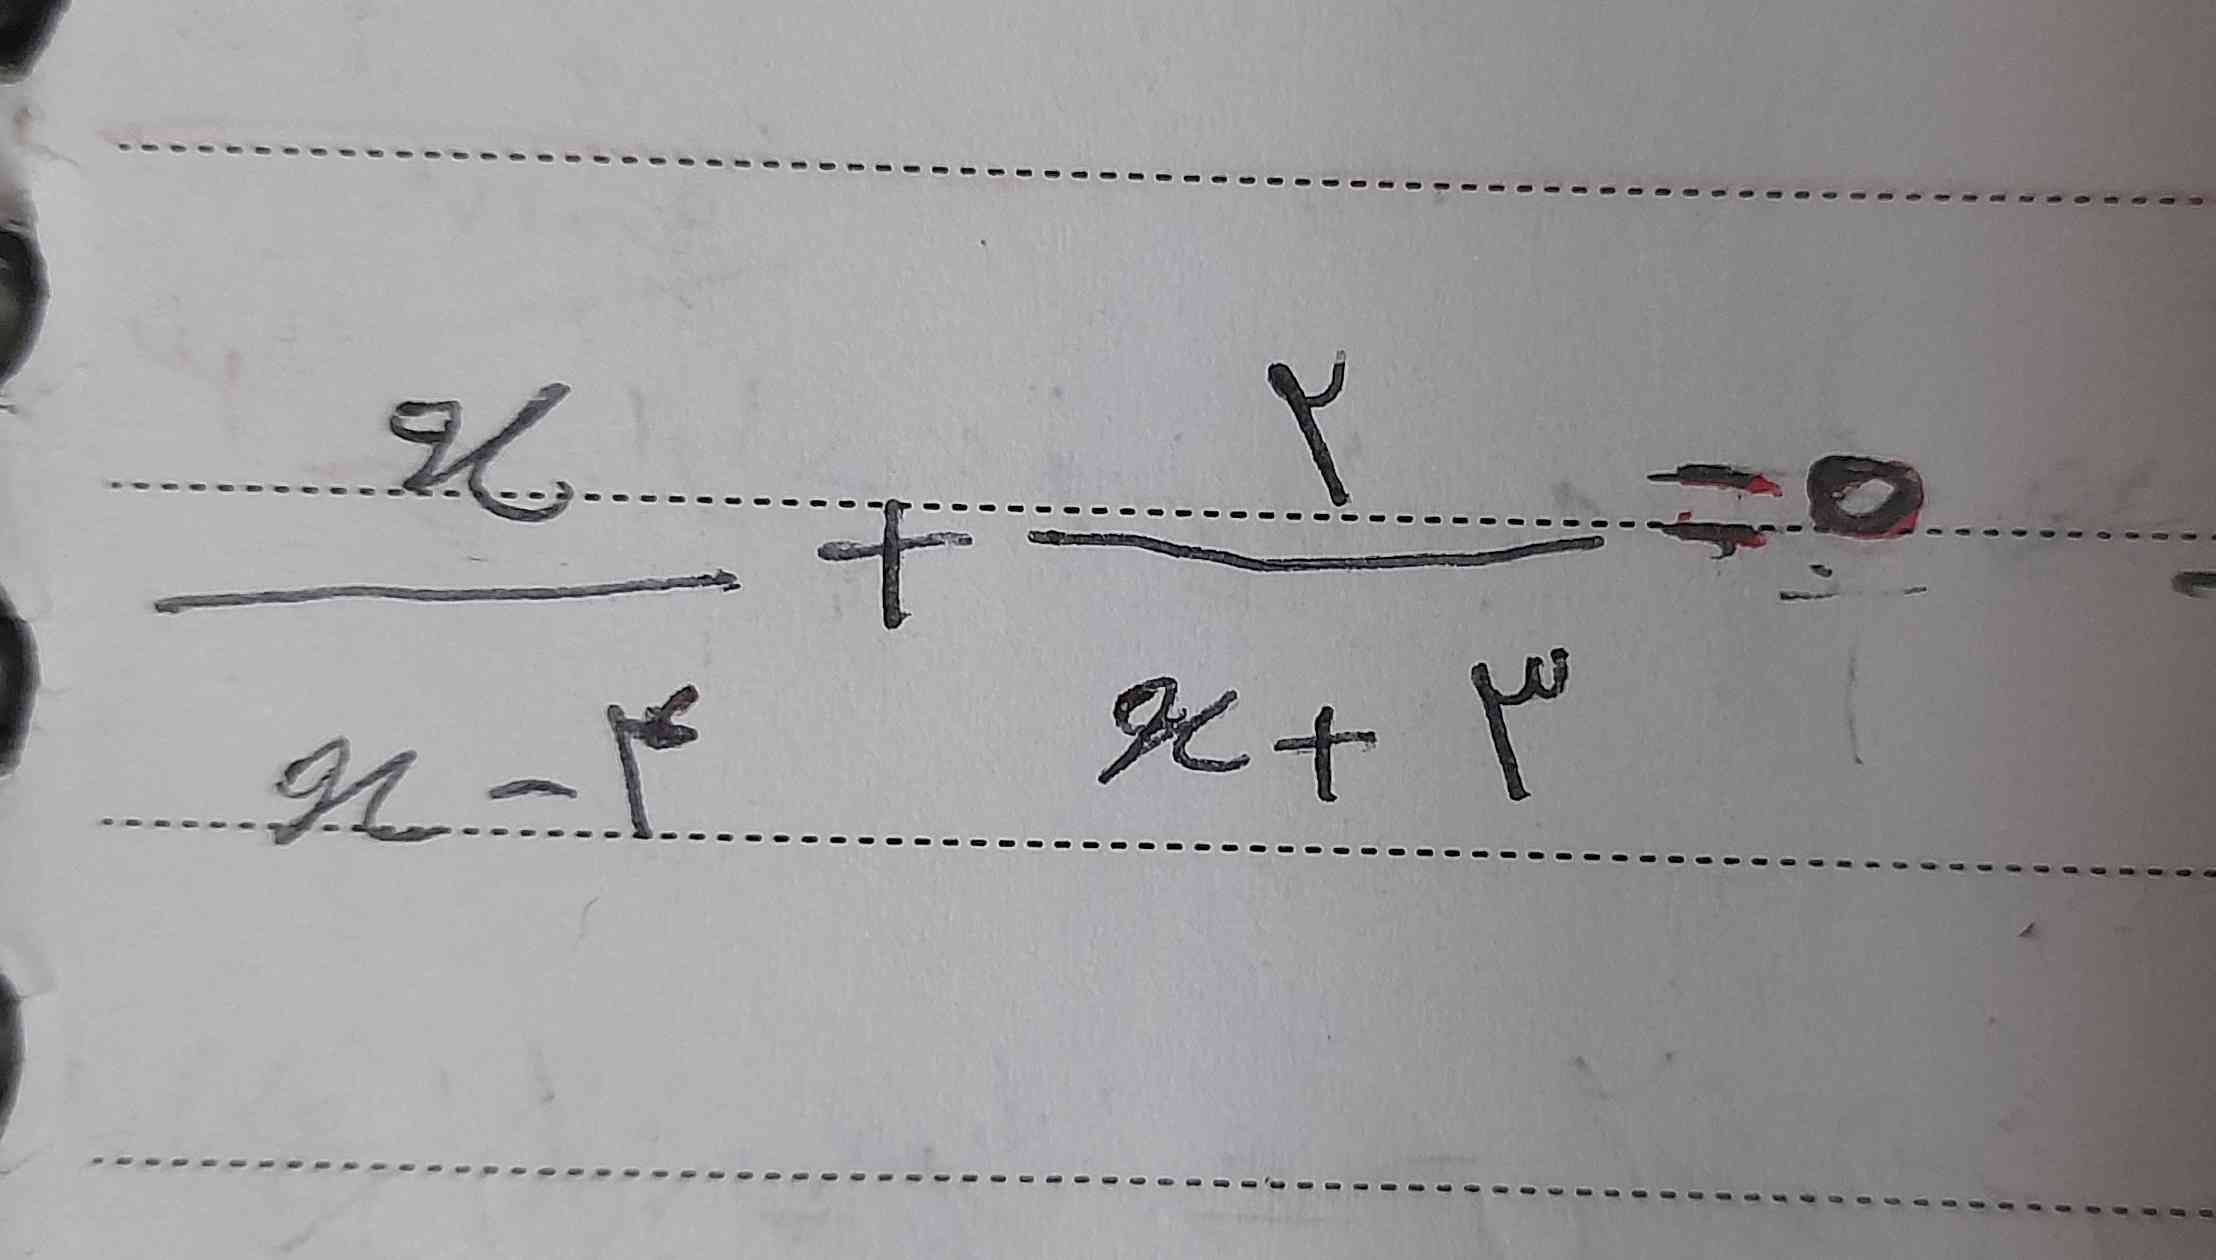 معادله زیر را حل کنید ( بررسی قابل قبول بودن جواب فراموش نشود )